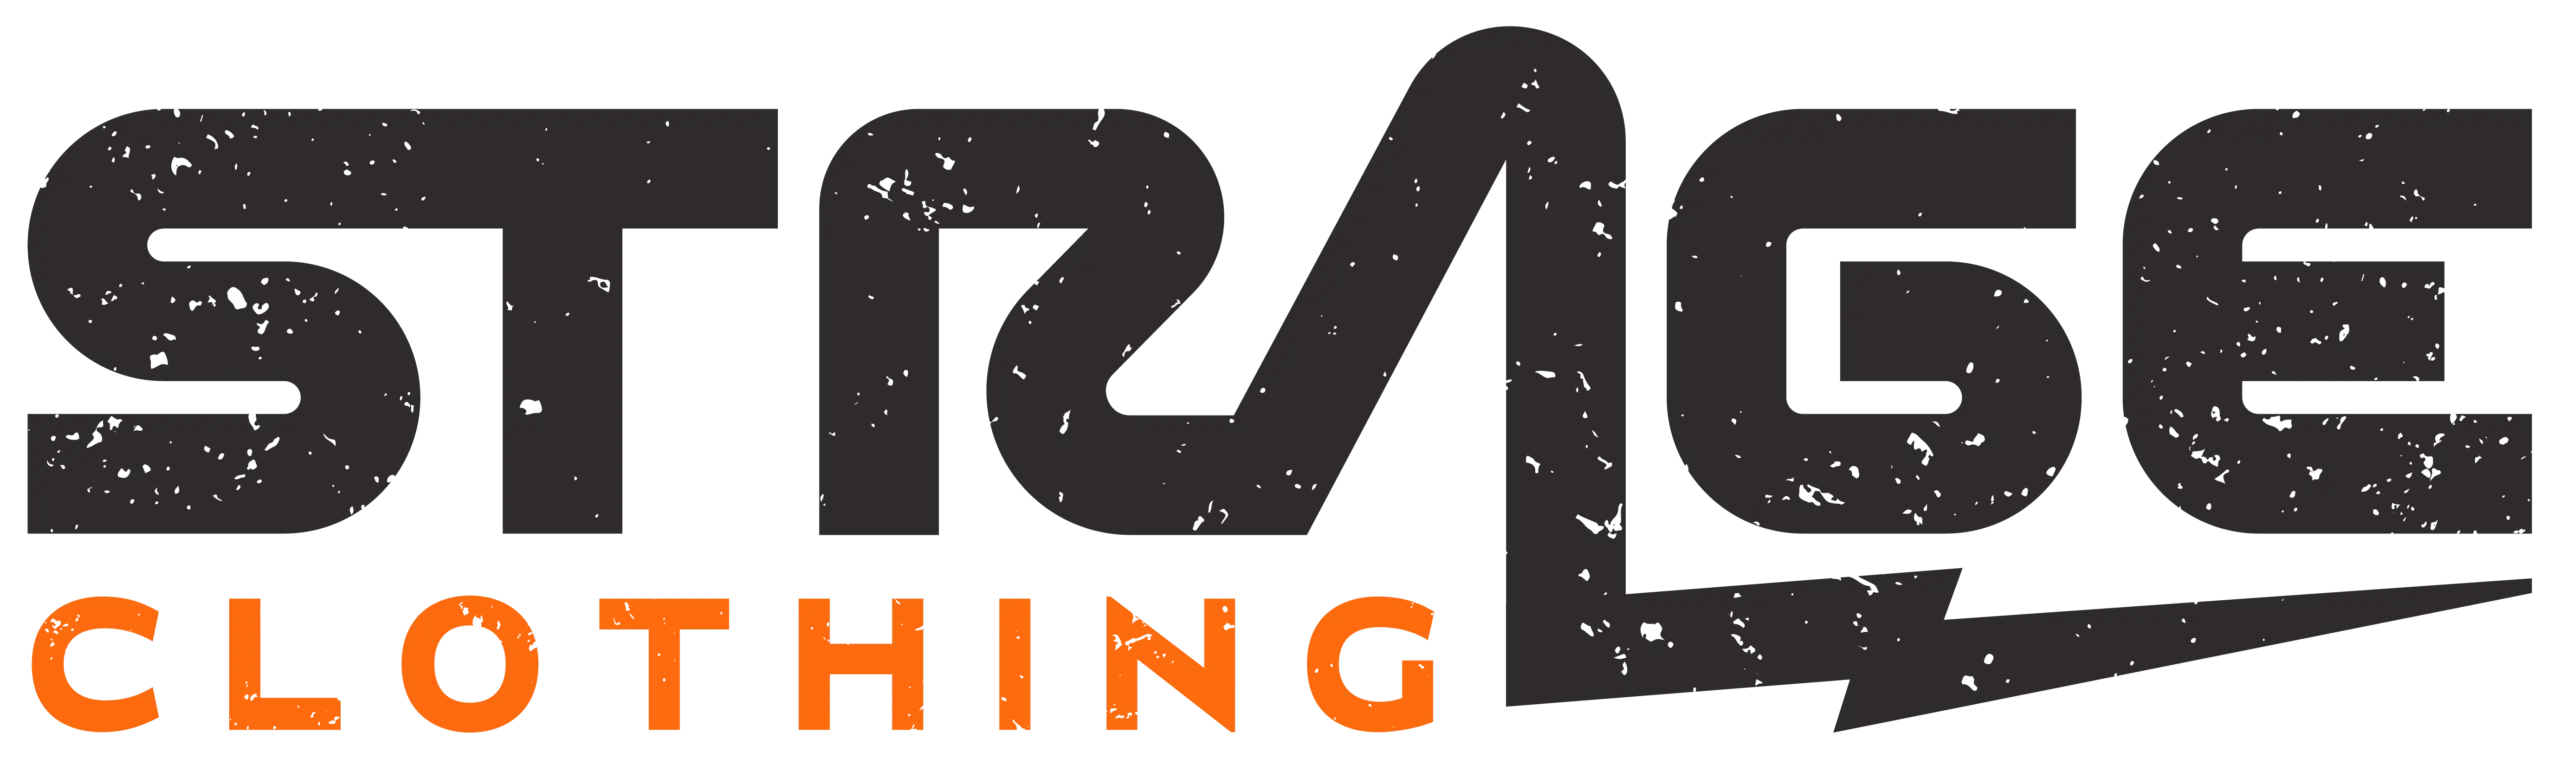 strage clothing logo